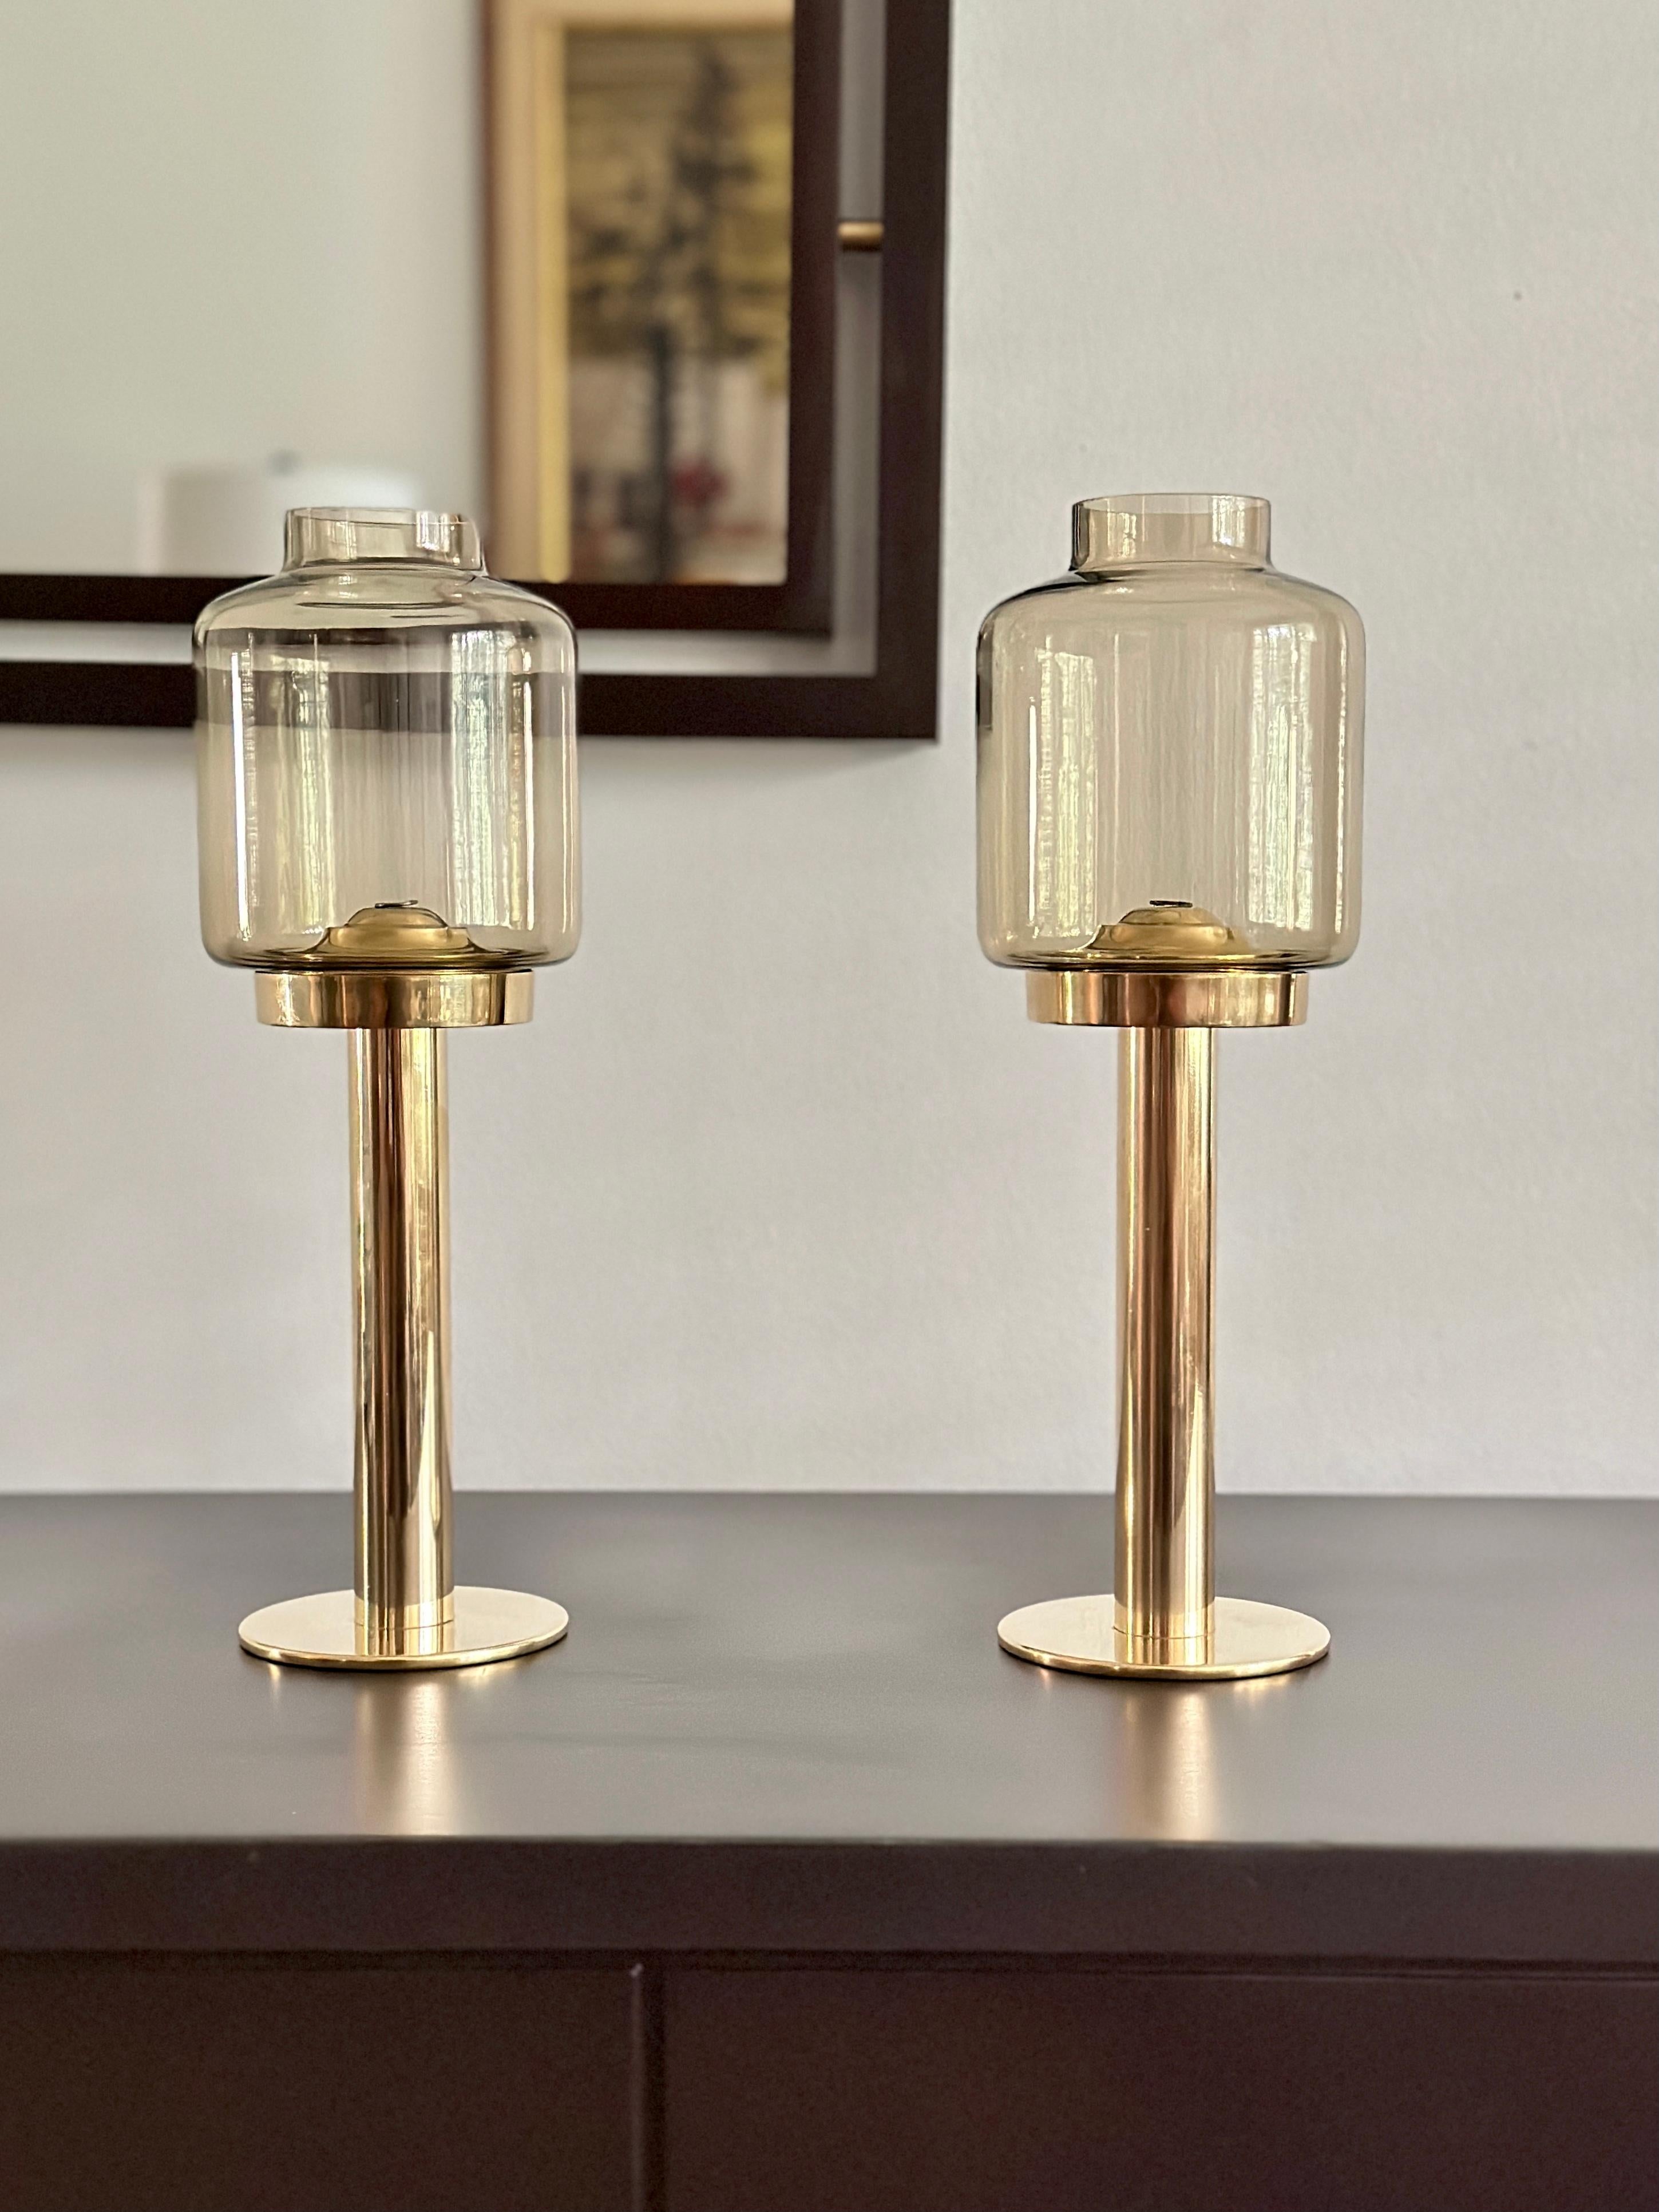 DESCRIPTION

Paire de bougeoirs conçus par Hans-Agne Jakobsson et produits par sa propre société, Hans-Agne Jakobsson AB, entre 1960 et 1970. Les chandeliers sont en laiton massif avec des globes en verre ambré. Les chandeliers sont dotés d'un